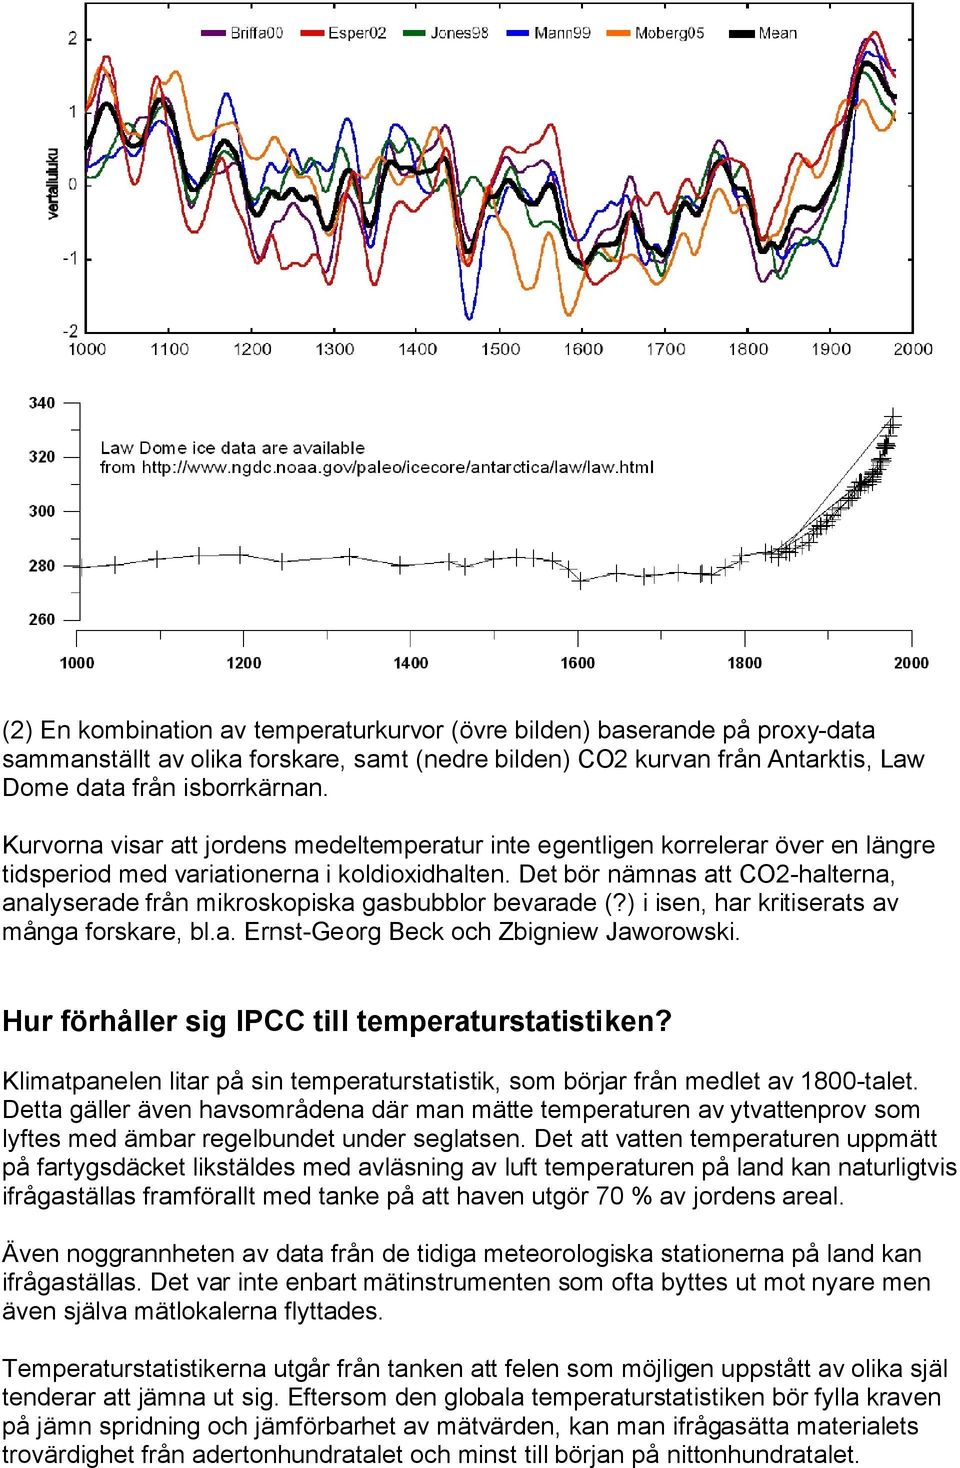 Det bör nämnas att CO2-halterna, analyserade från mikroskopiska gasbubblor bevarade (?) i isen, har kritiserats av många forskare, bl.a. Ernst-Georg Beck och Zbigniew Jaworowski.